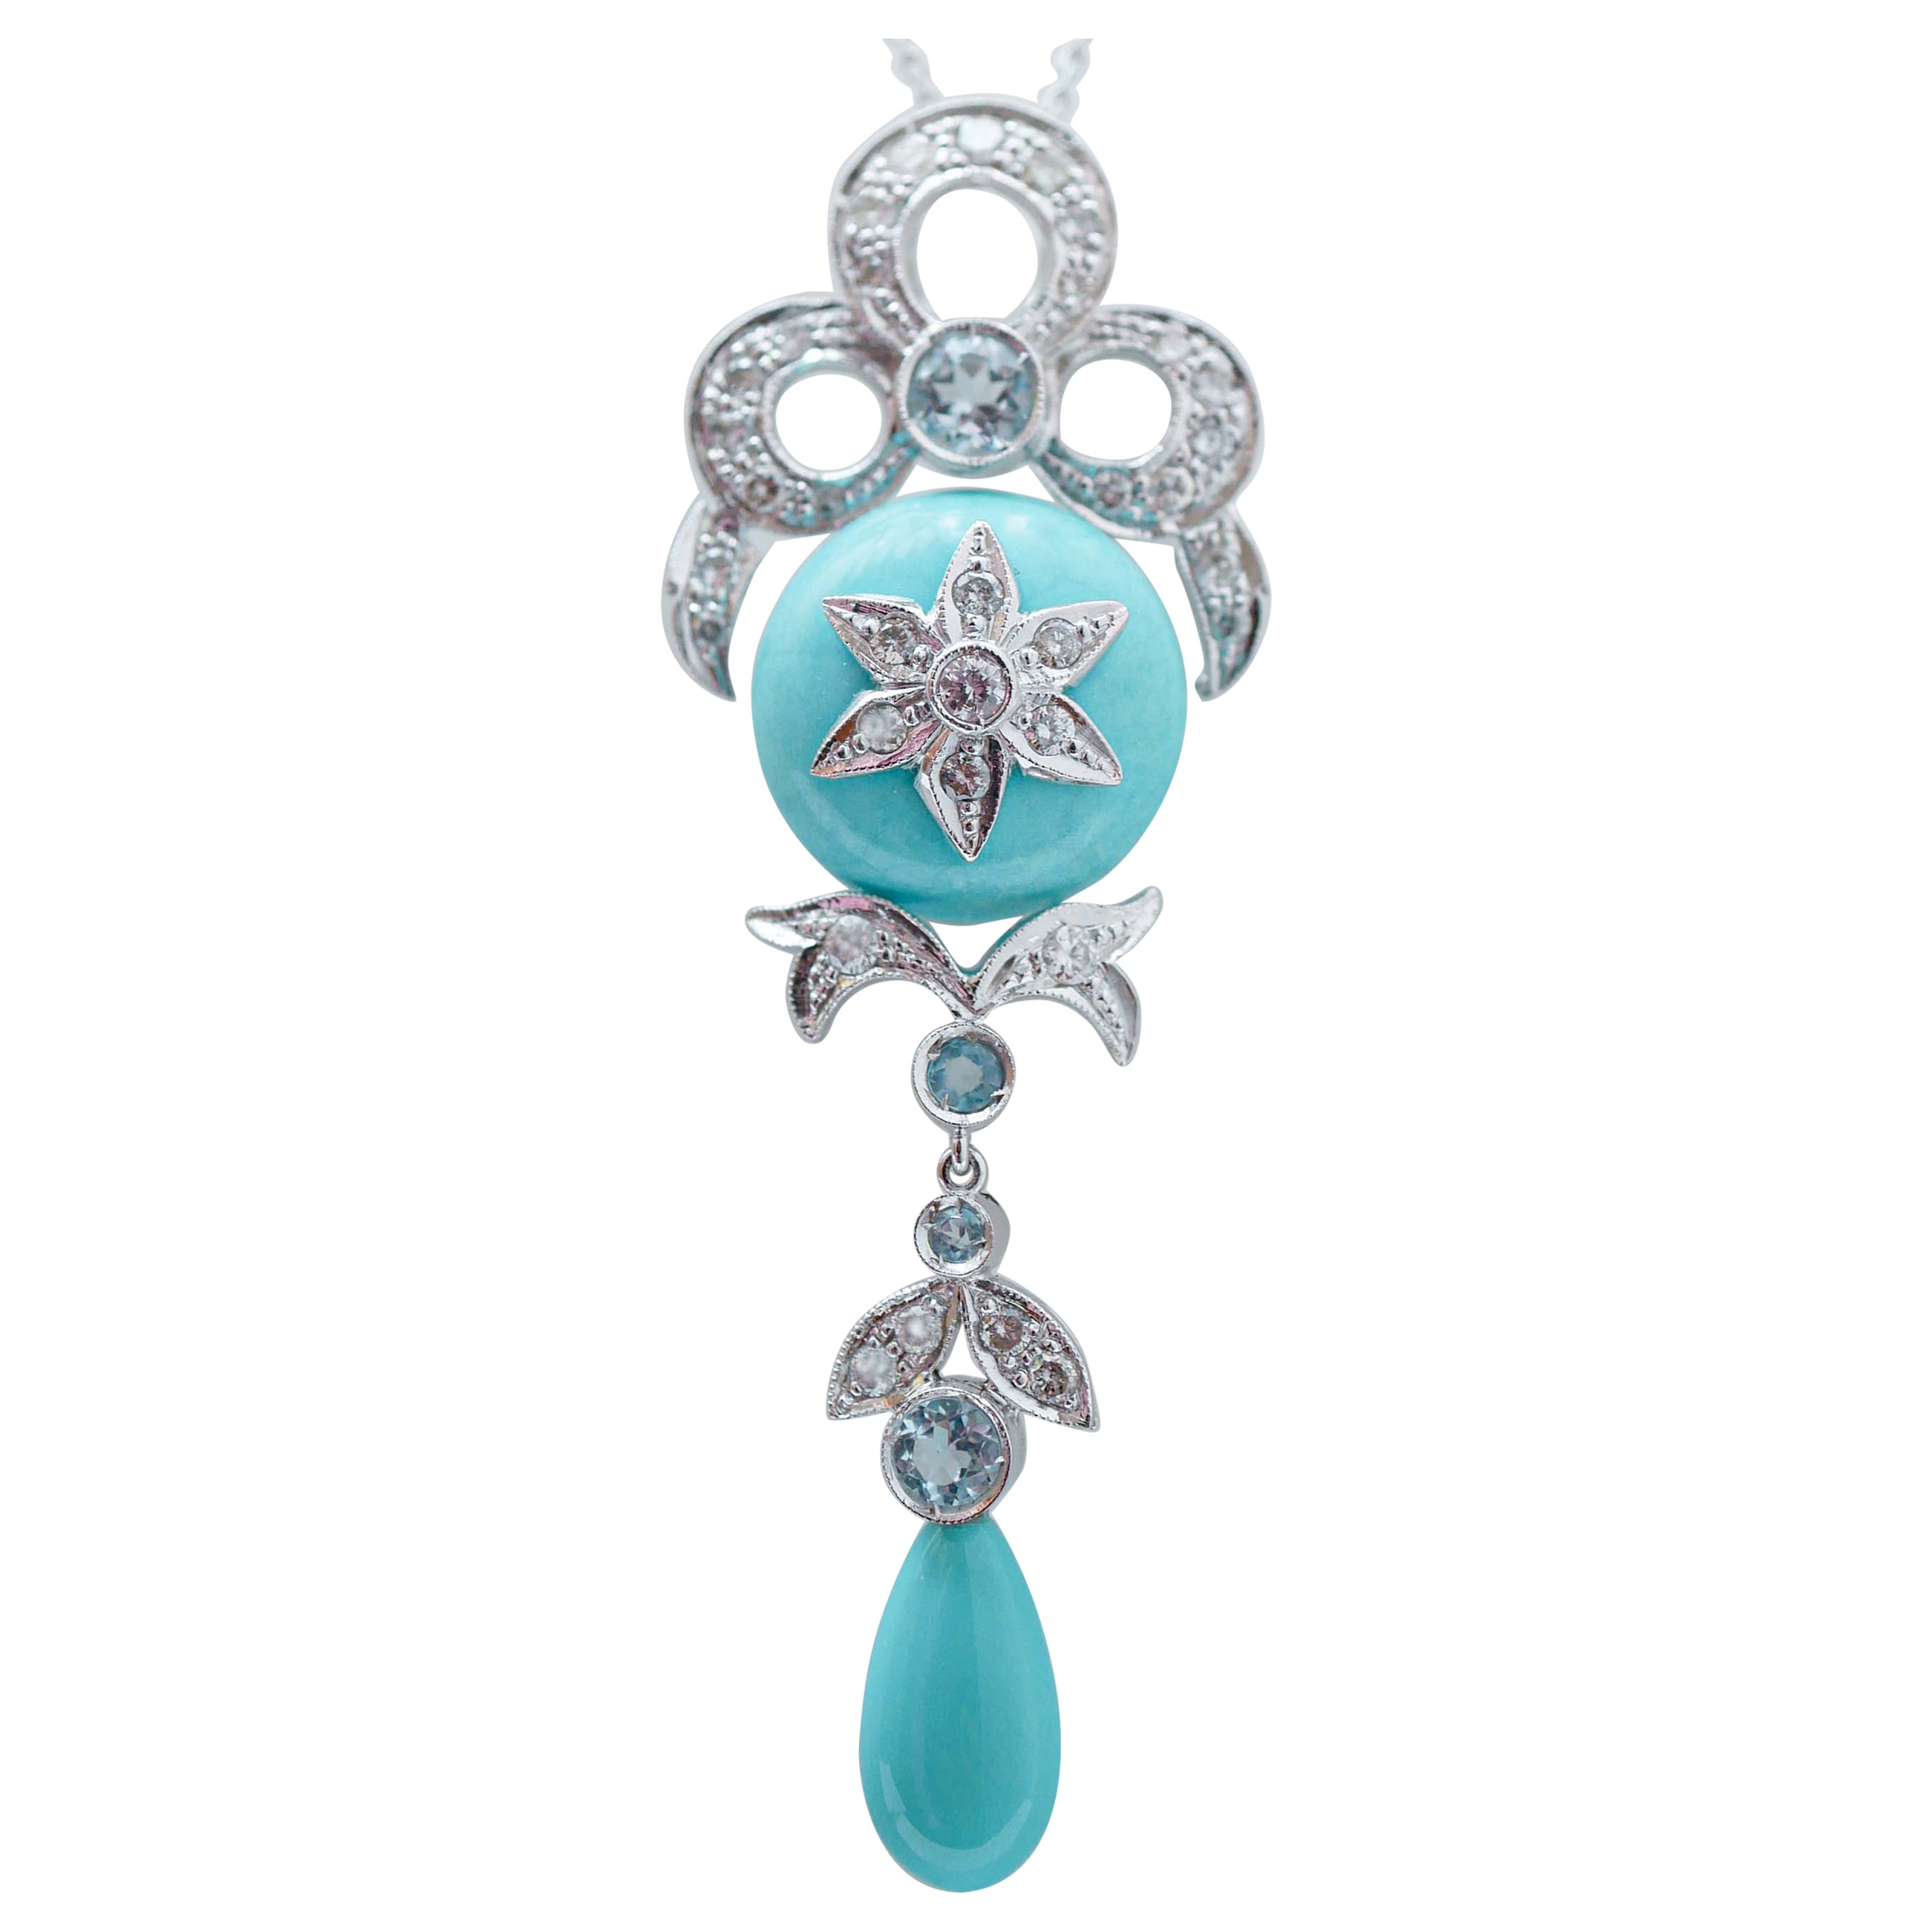 Turquoise, aigue-marine, topazes de couleur, diamants, collier à pendentifs en platine.